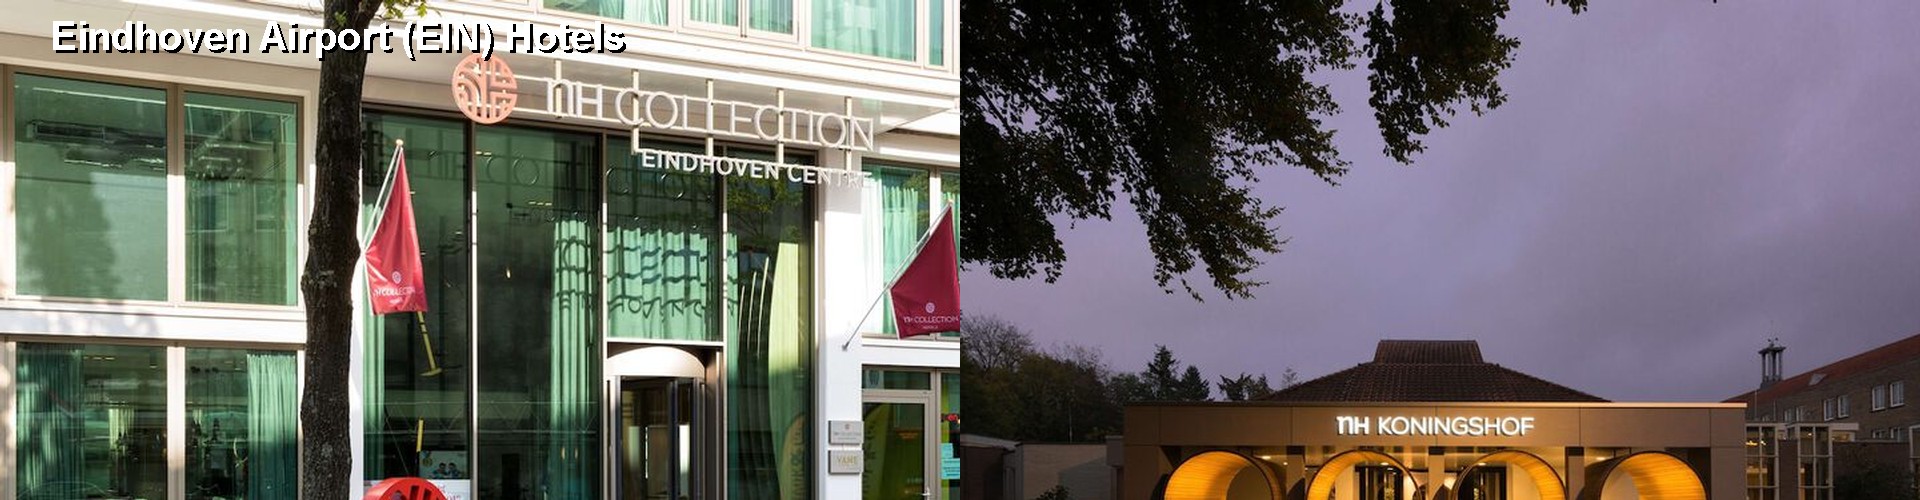 5 Best Hotels near Eindhoven Airport (EIN)